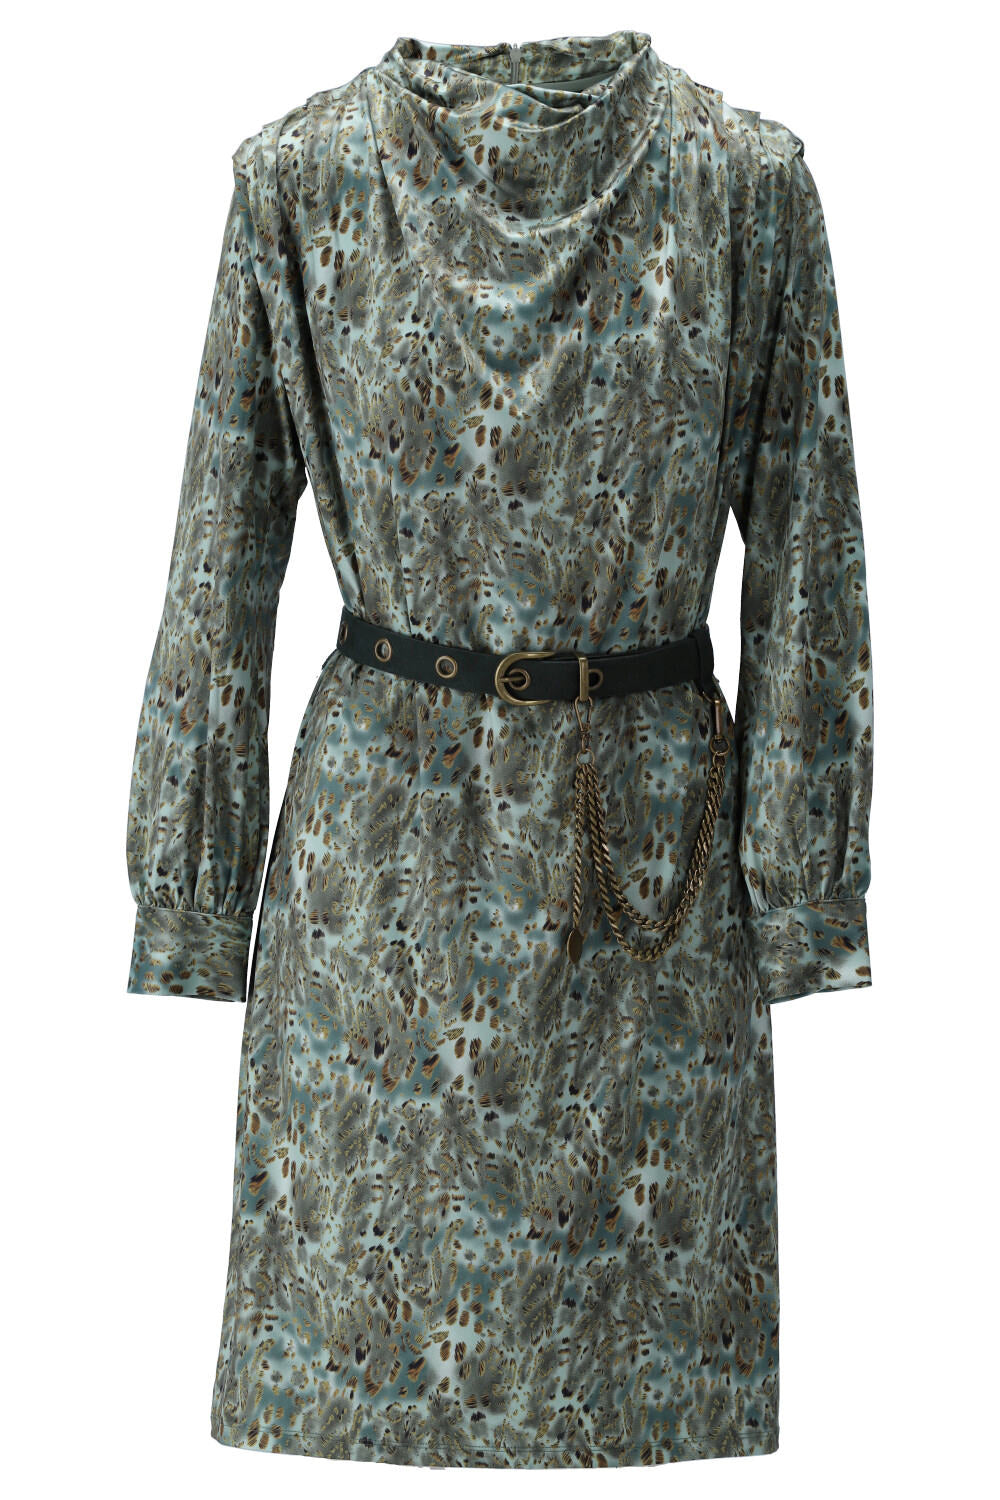 K-Design - Short dress, with print and belt (V203)